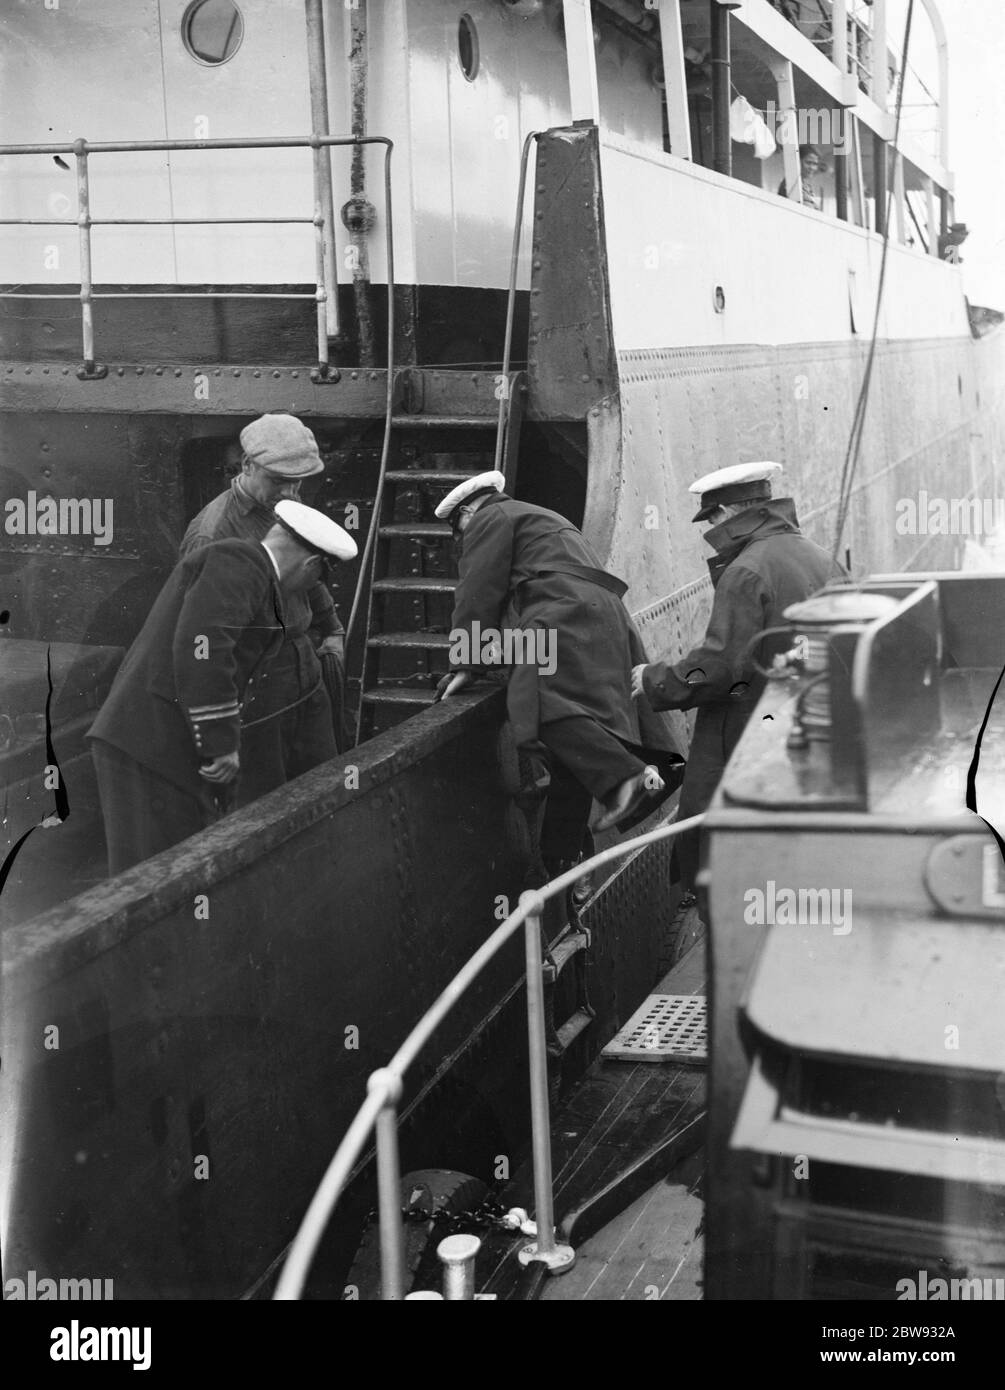 Thames Piloten in Gravesend, Kent, die Schiffen helfen, durch die verstopften Gewässer des Hafens zu navigieren. Piloten Bord Schiff . 1939 Stockfoto